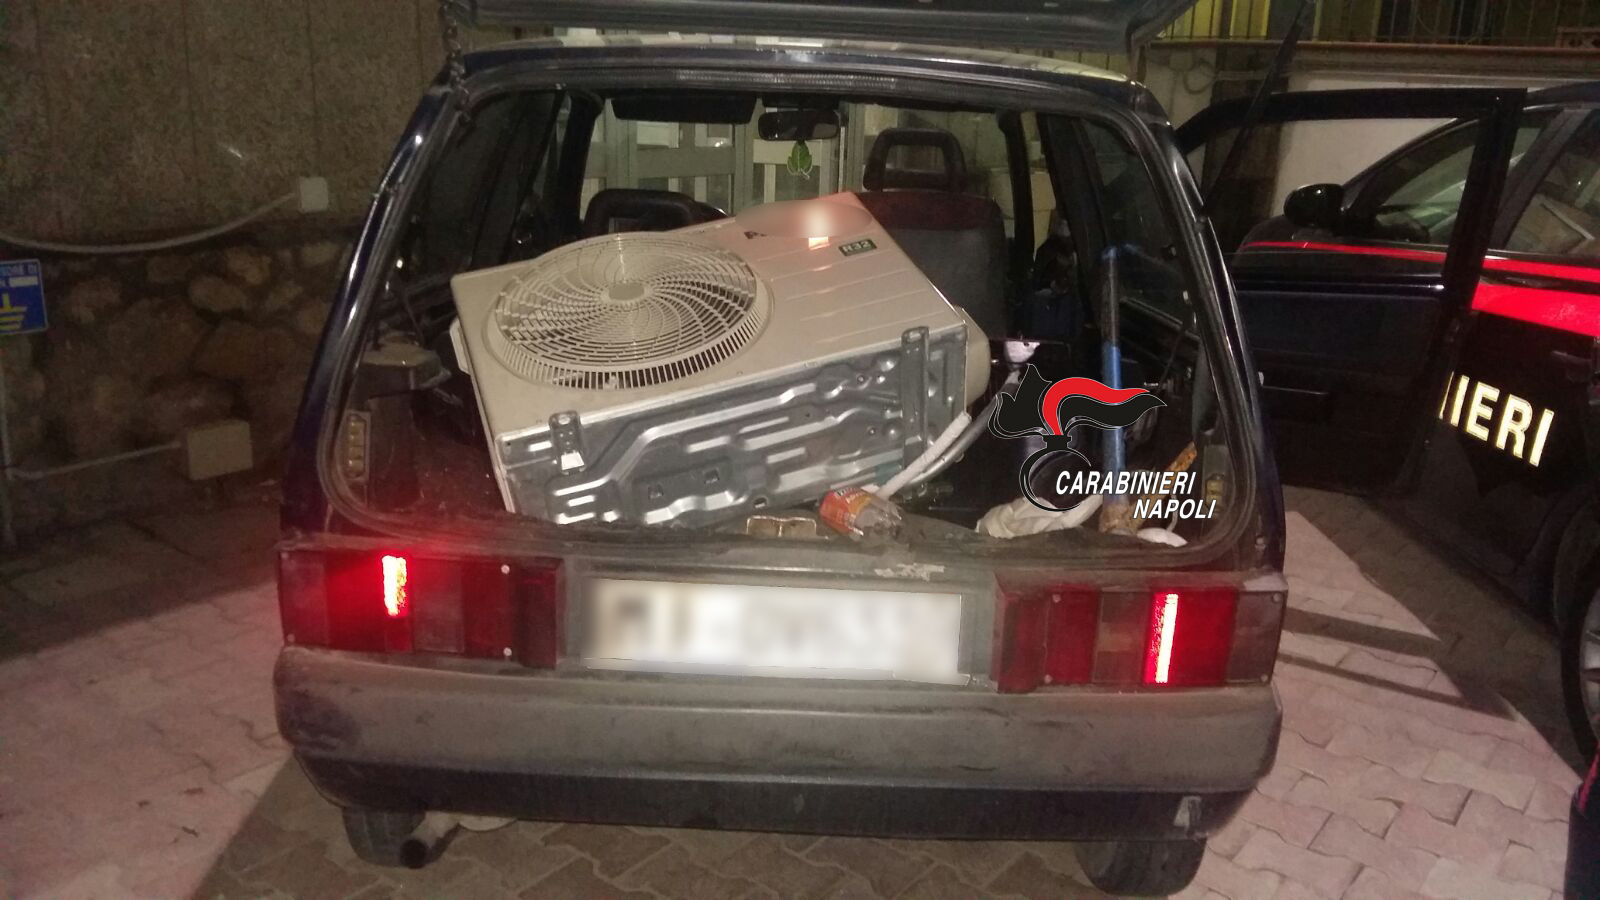  Nola: Carabinieri arrestano 3 persone che avevano appena rubato un condizionatore 